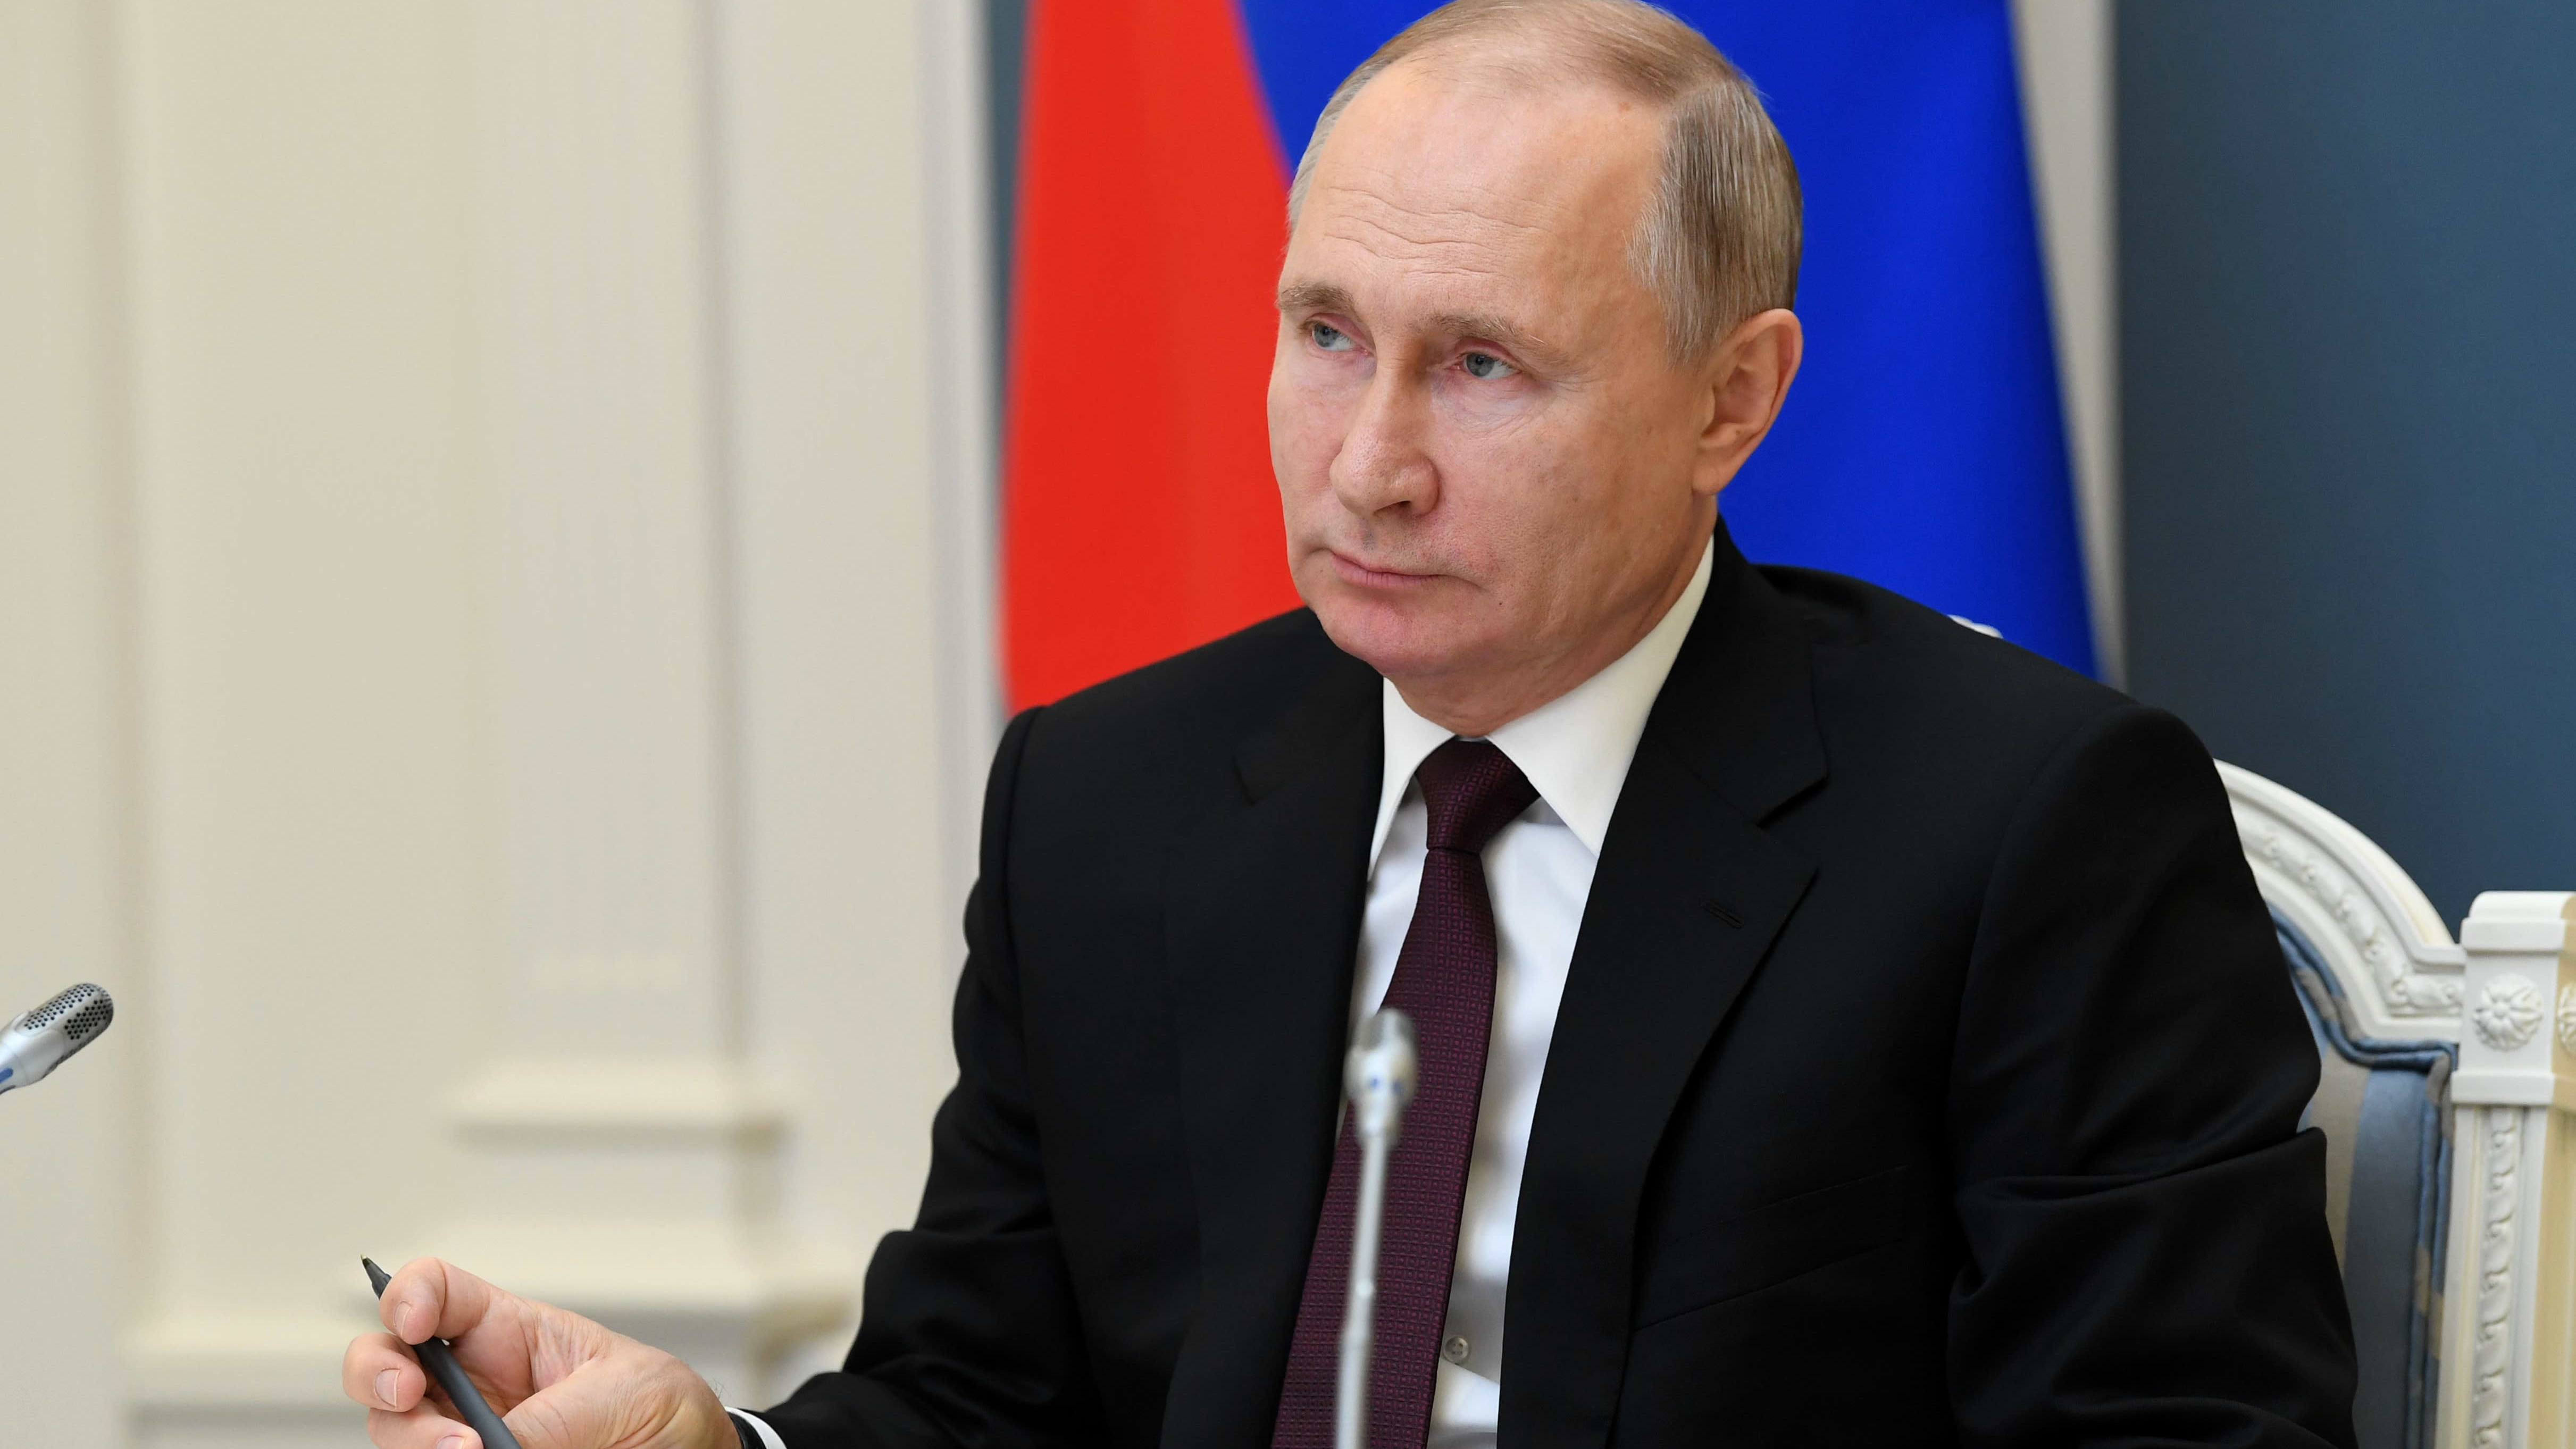 Venäjän presidentti Vladimir Putin kynä kädessään